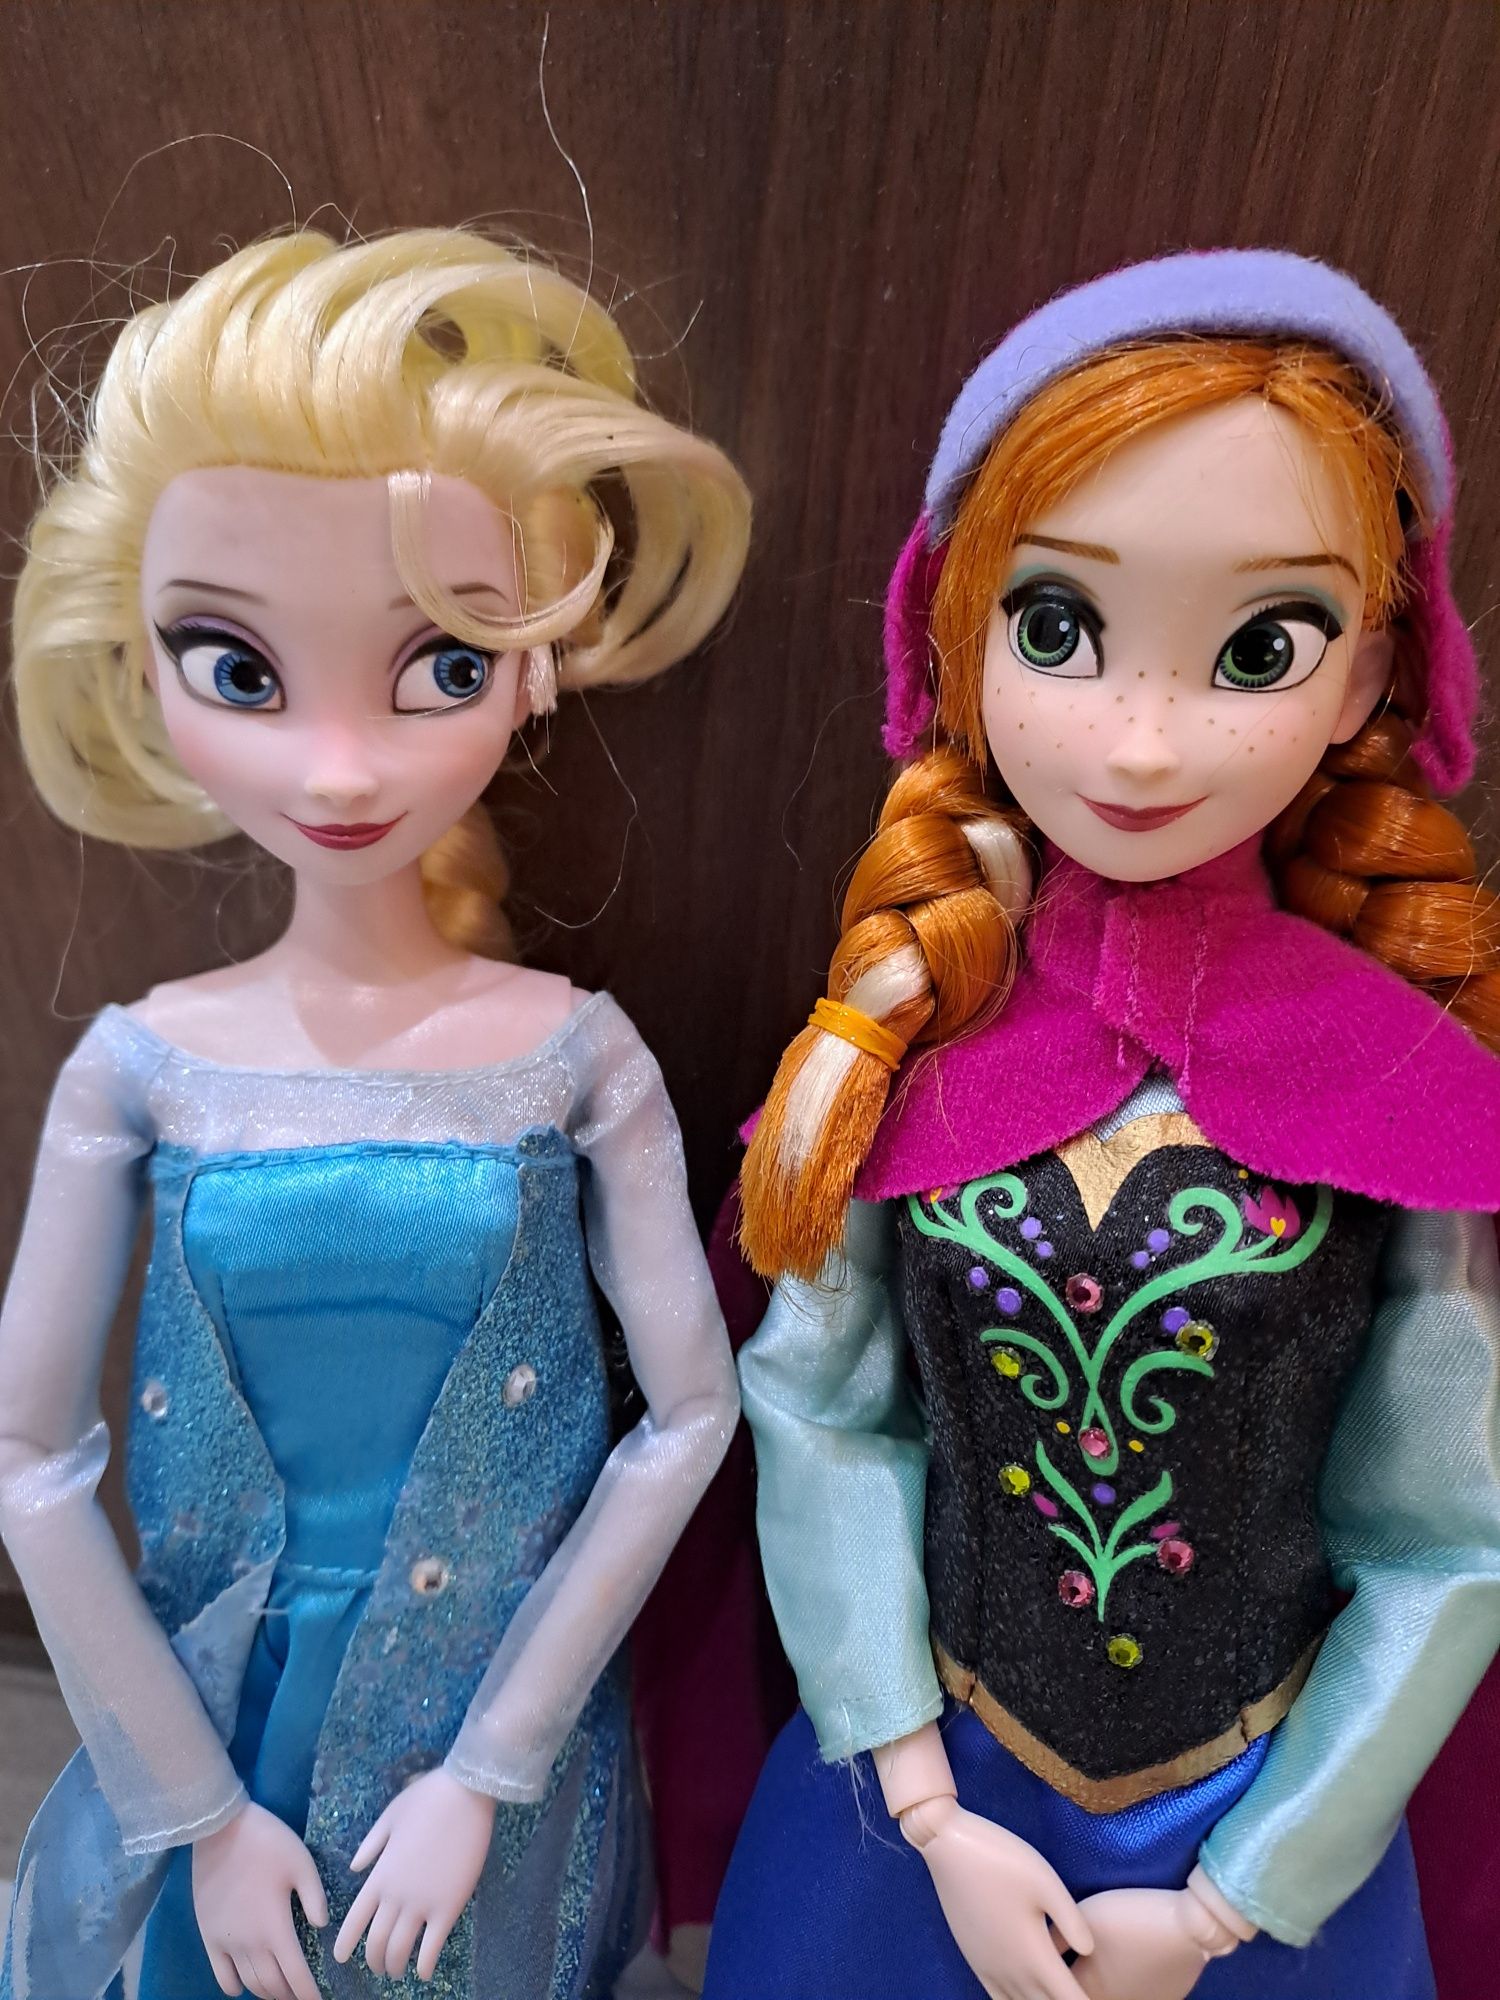 Kraina lodu, Frozen, Elsa, Anna,Disney Store